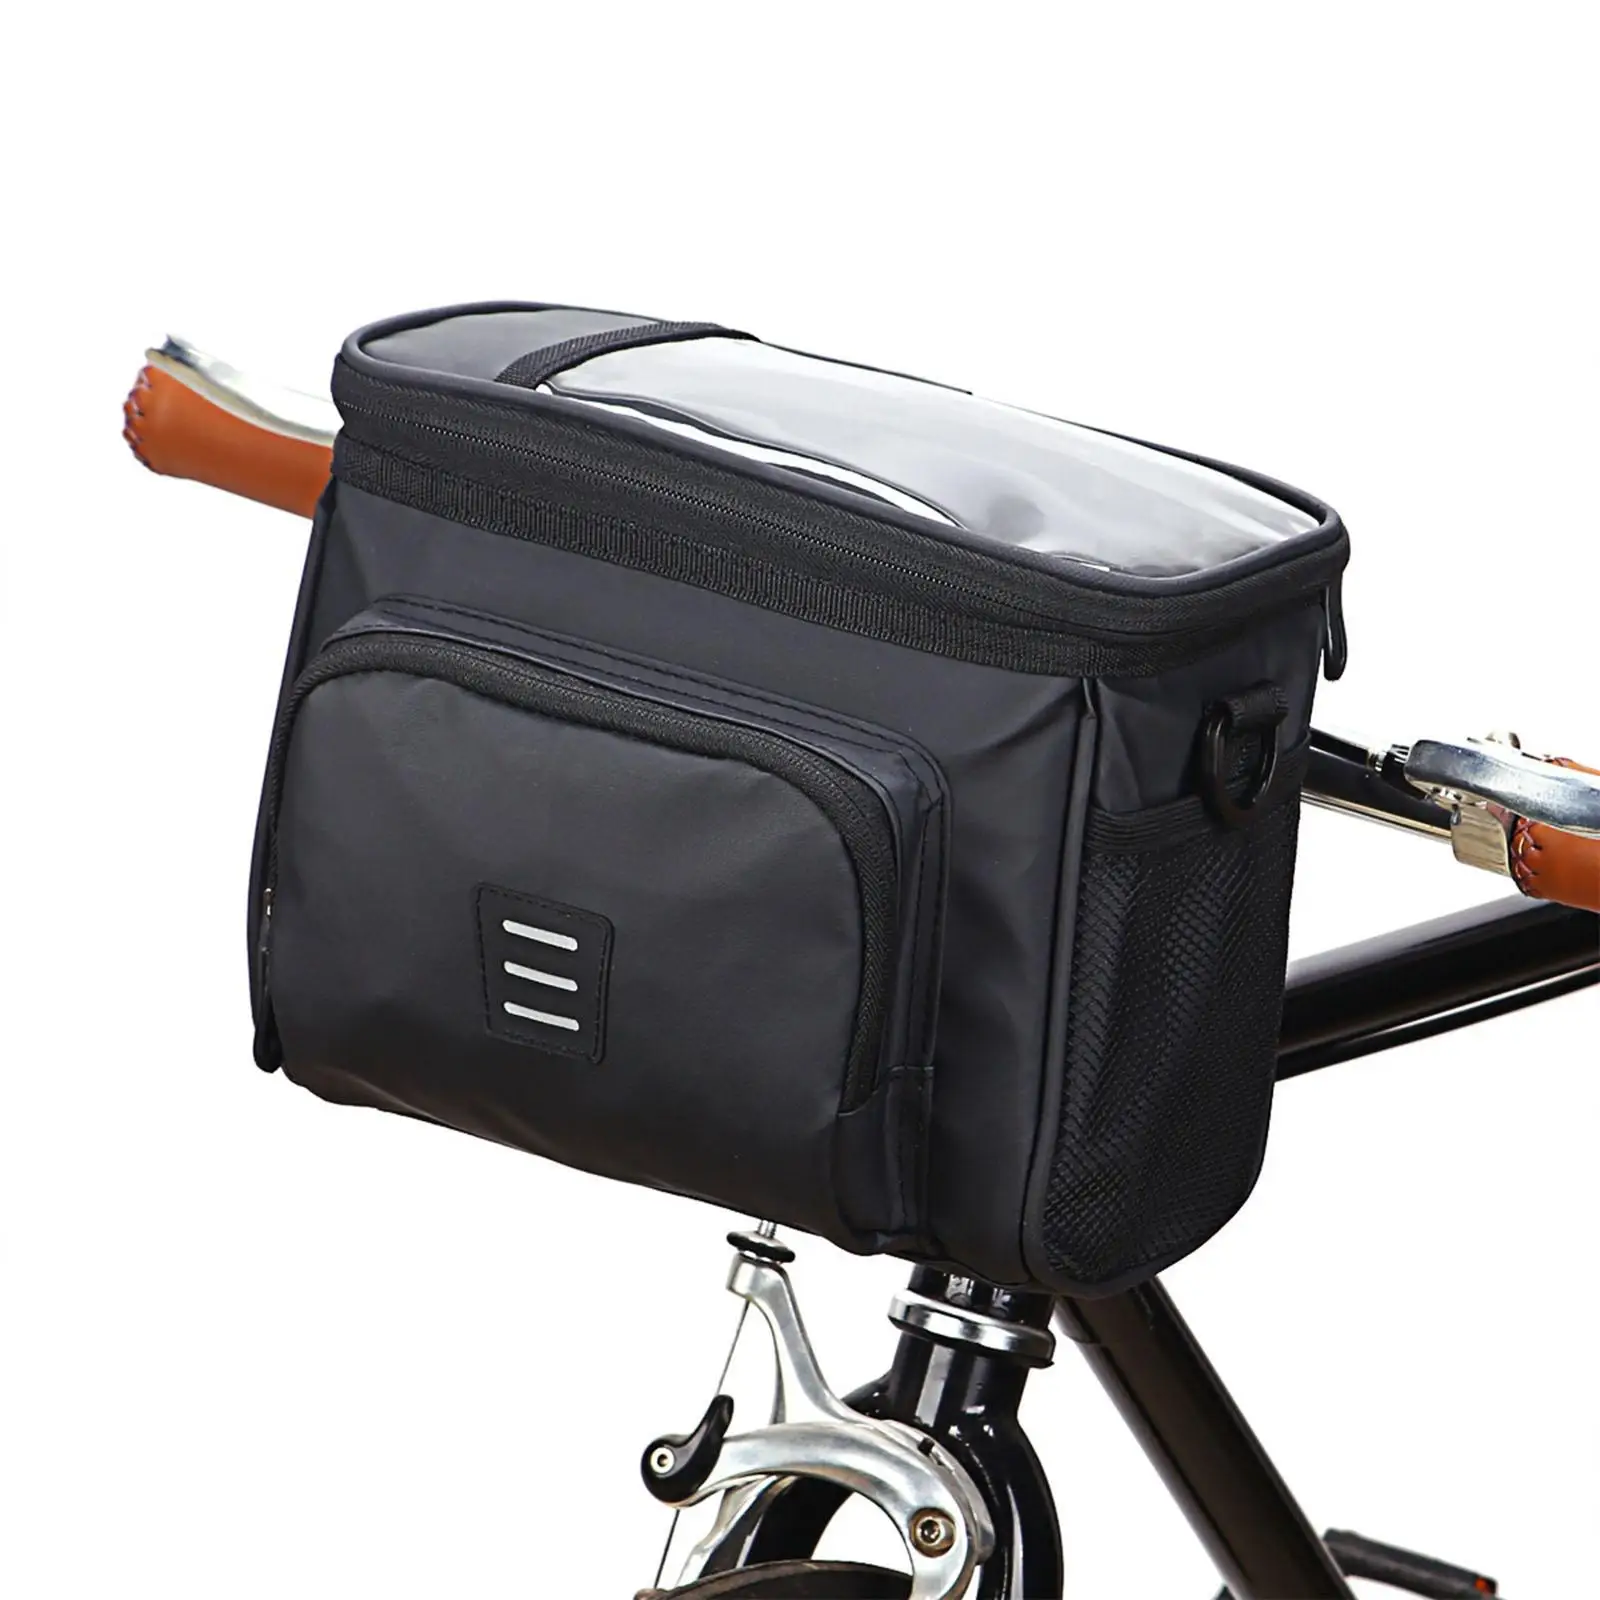 Bike Handlebar Bag Multipurpose Riding Pocket Durable for Riding Bike Travel